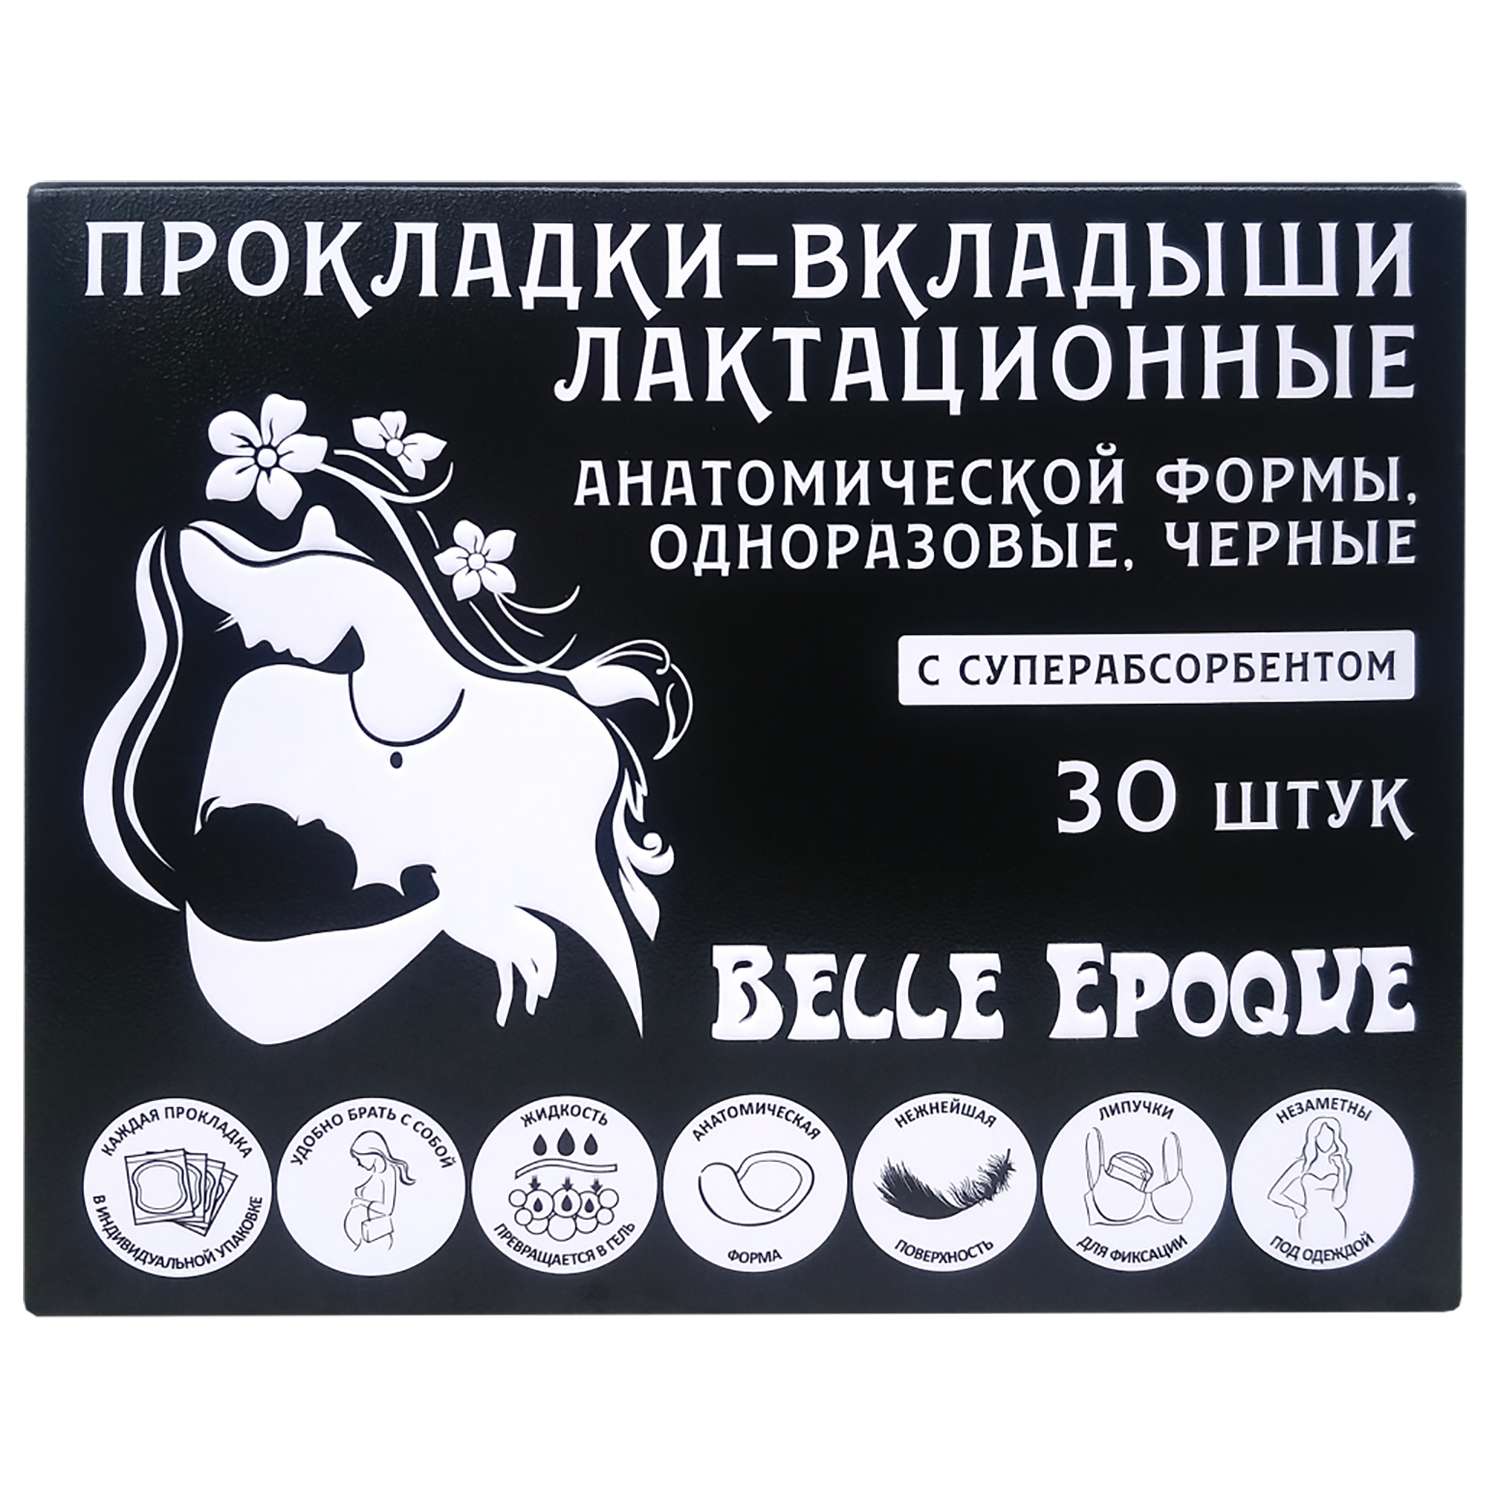 Прокладки-вкладыши Belle Epoque лактационные с суперабсорбентом Чёрные 30шт - фото 2